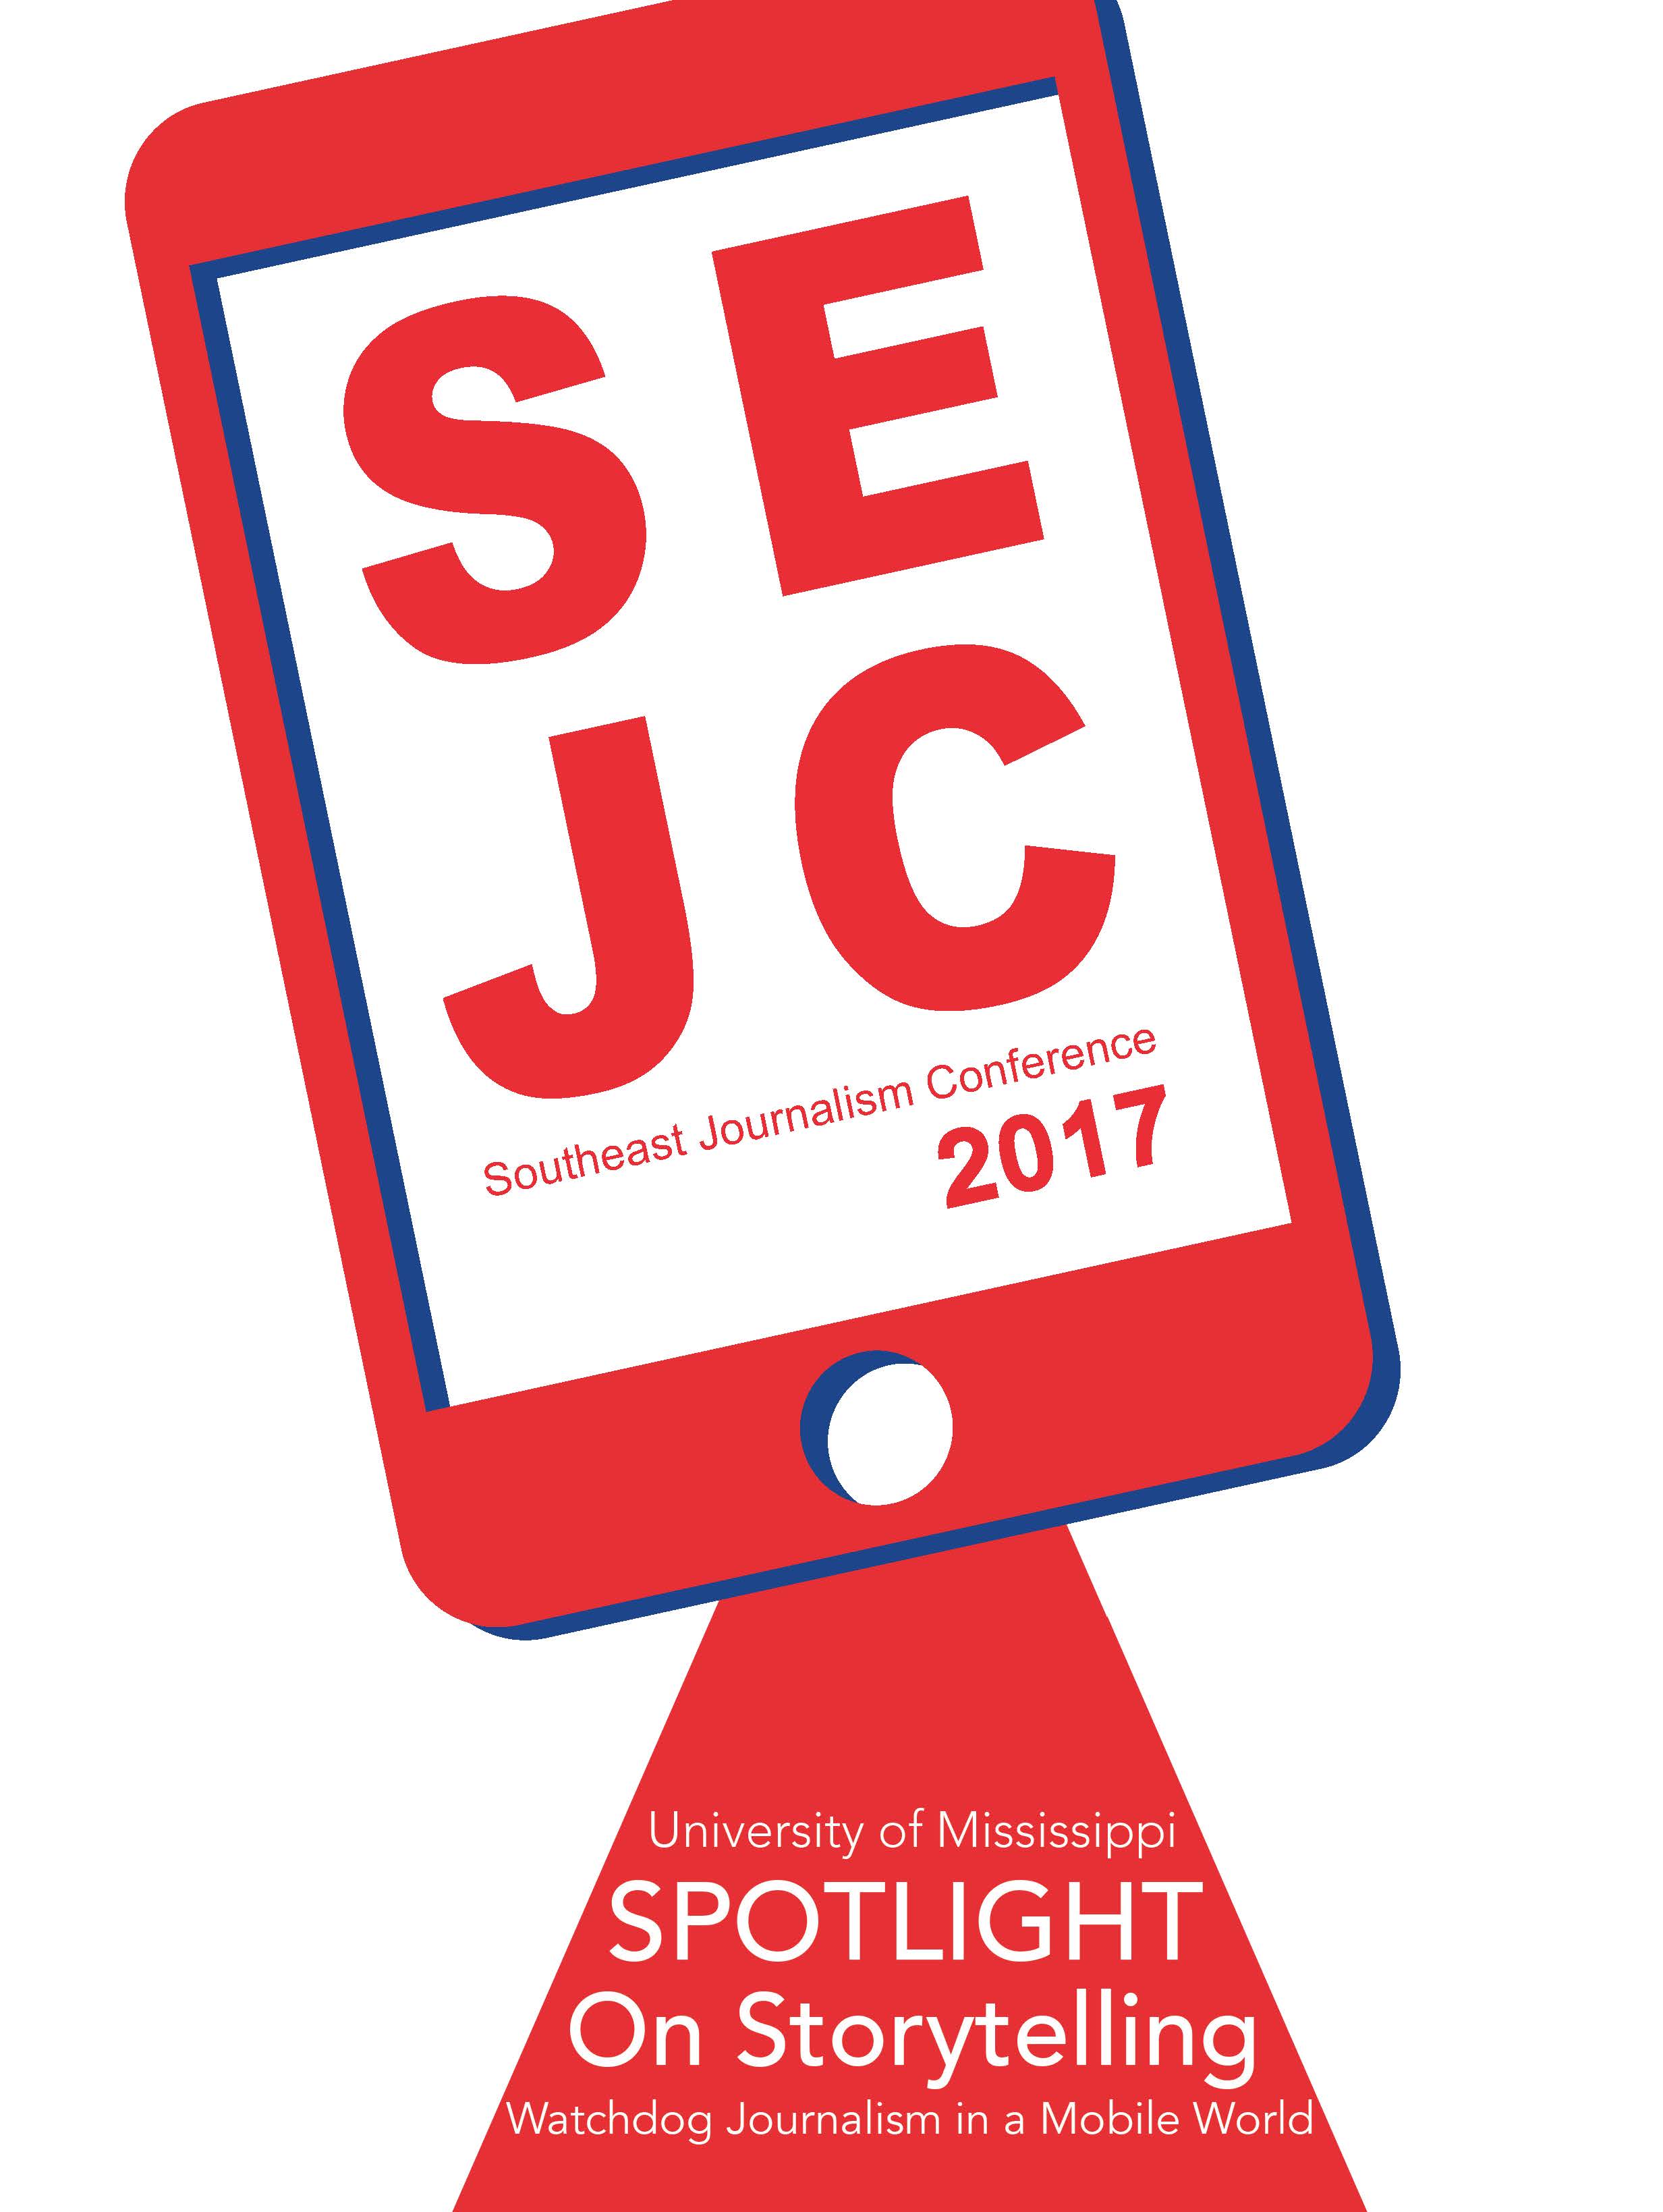  Link to SEJC 2017 program